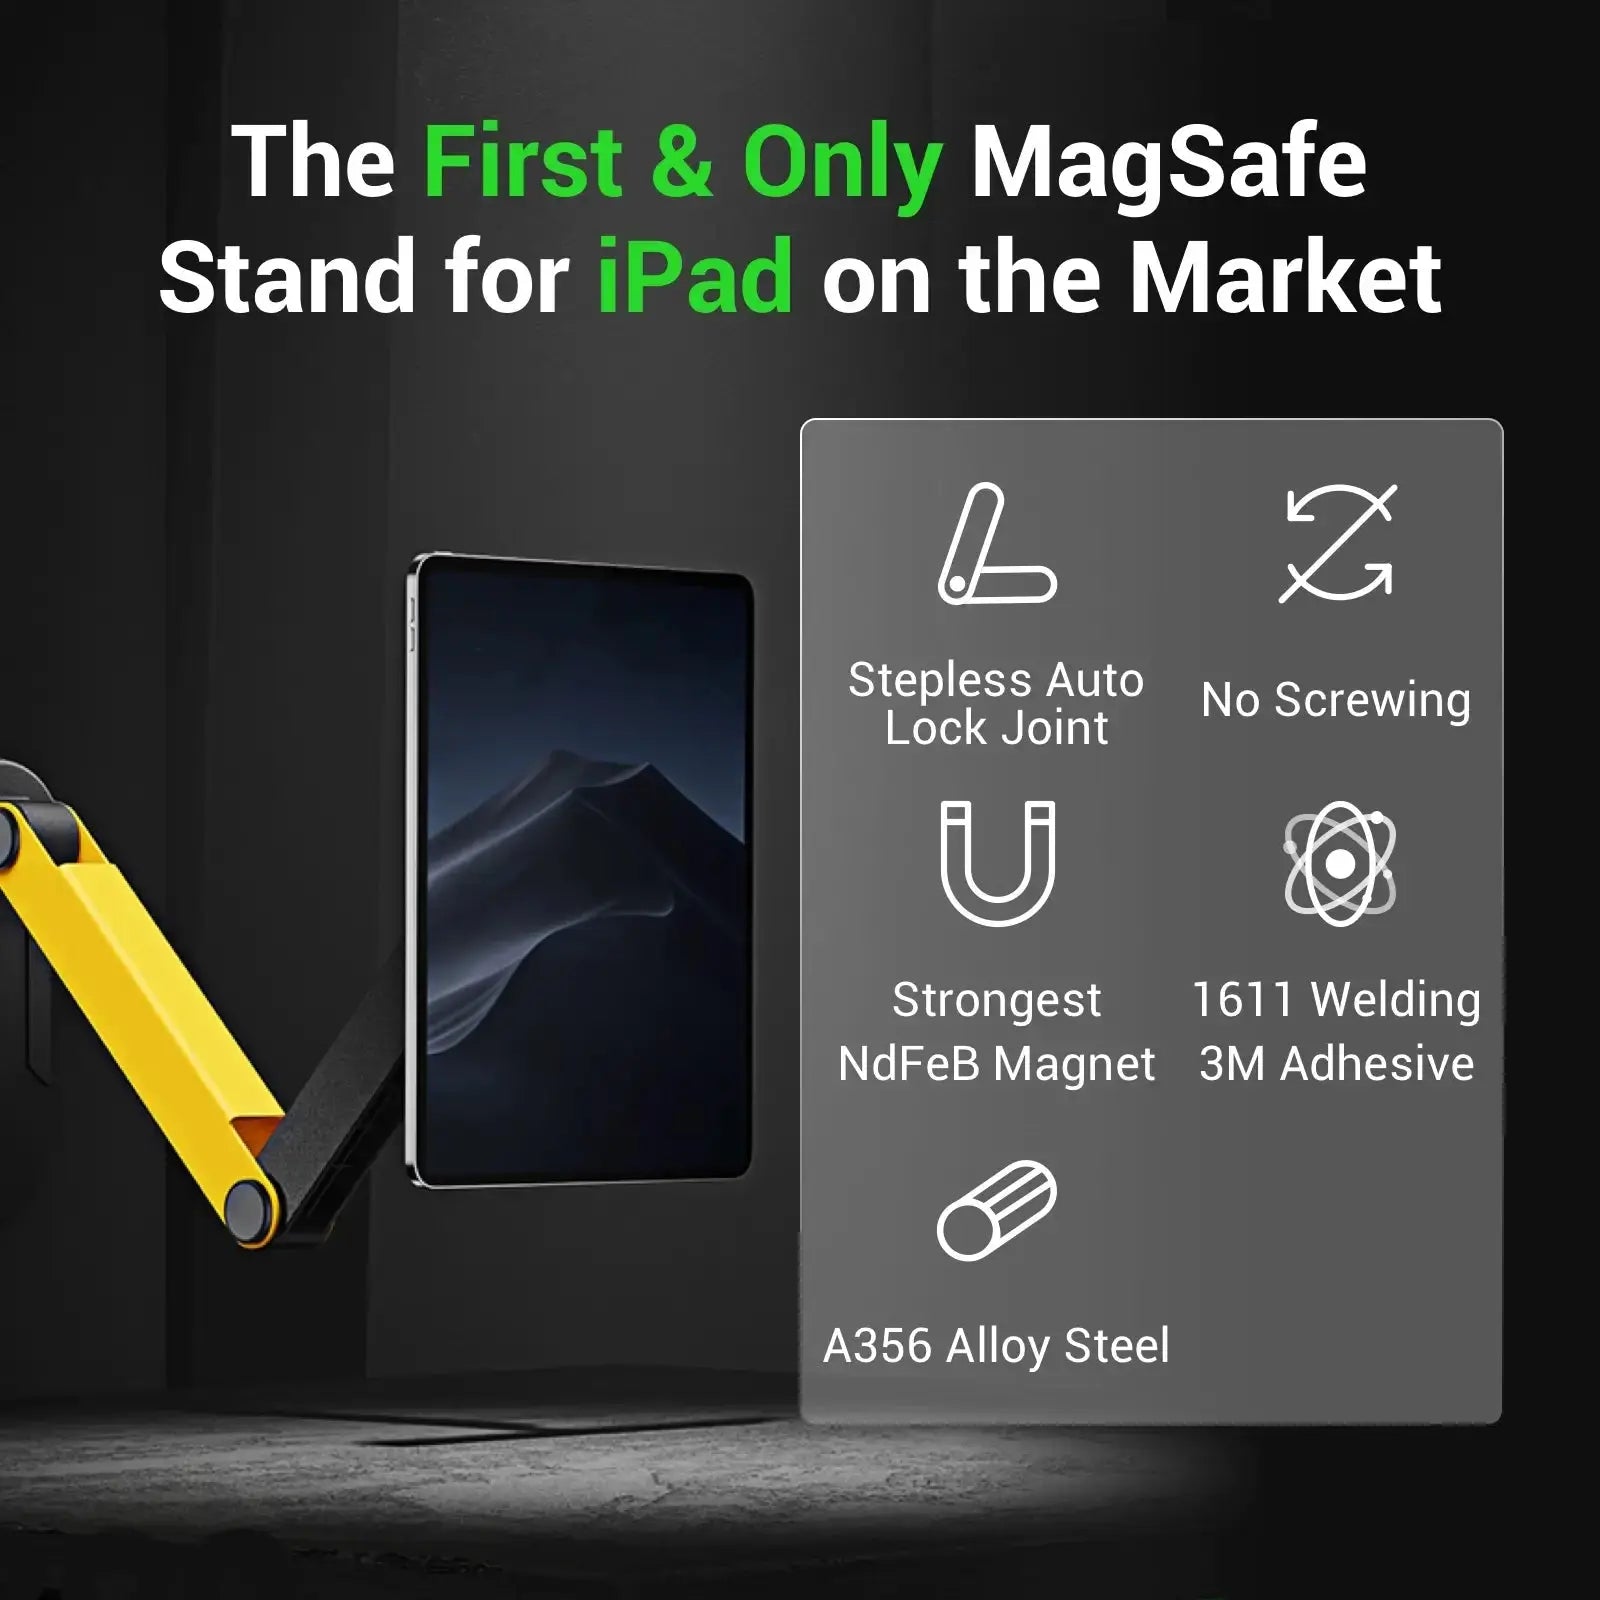 Adjustable Magnetic Phone&Tablet Holder Cool Gadget